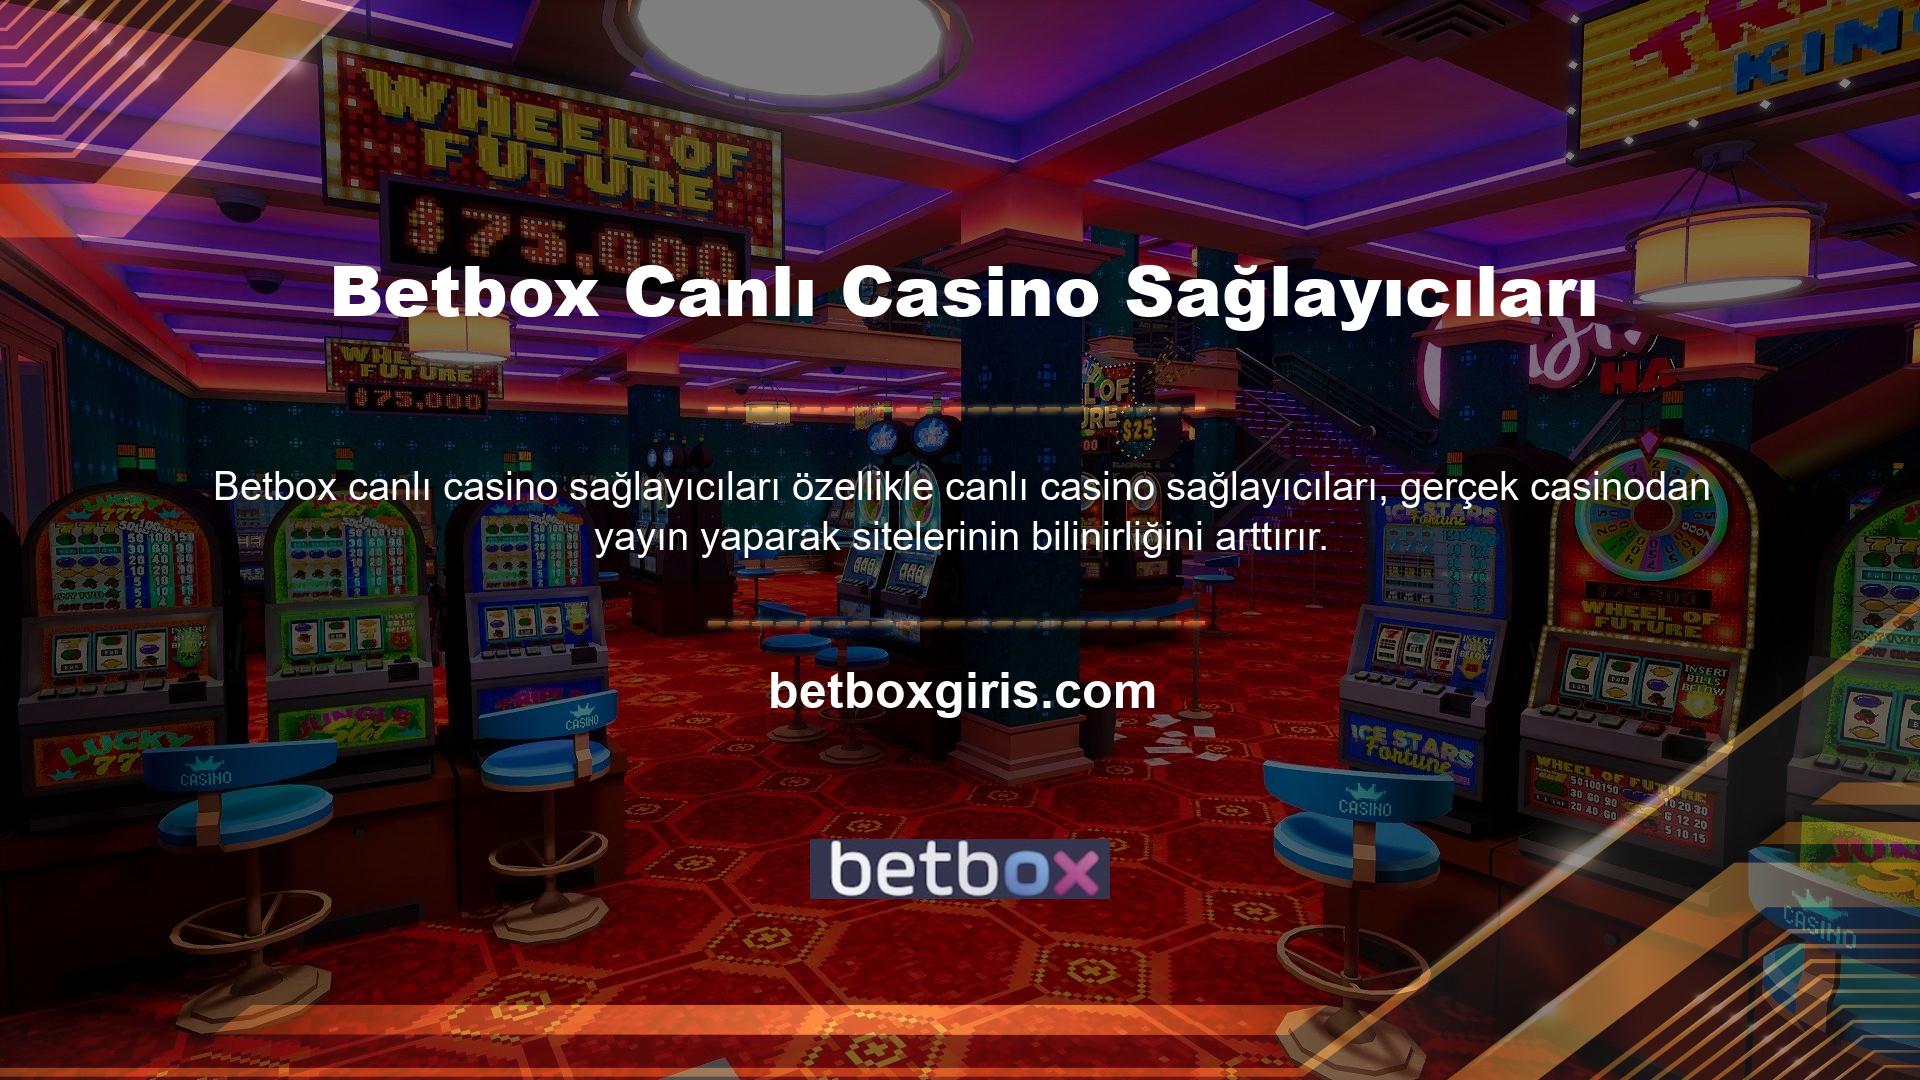 Canlı bahis ve casino oyunu promosyon teklifleri, bahis tutkunu olan Betbox aksine tüm bahisçilere hitap eder